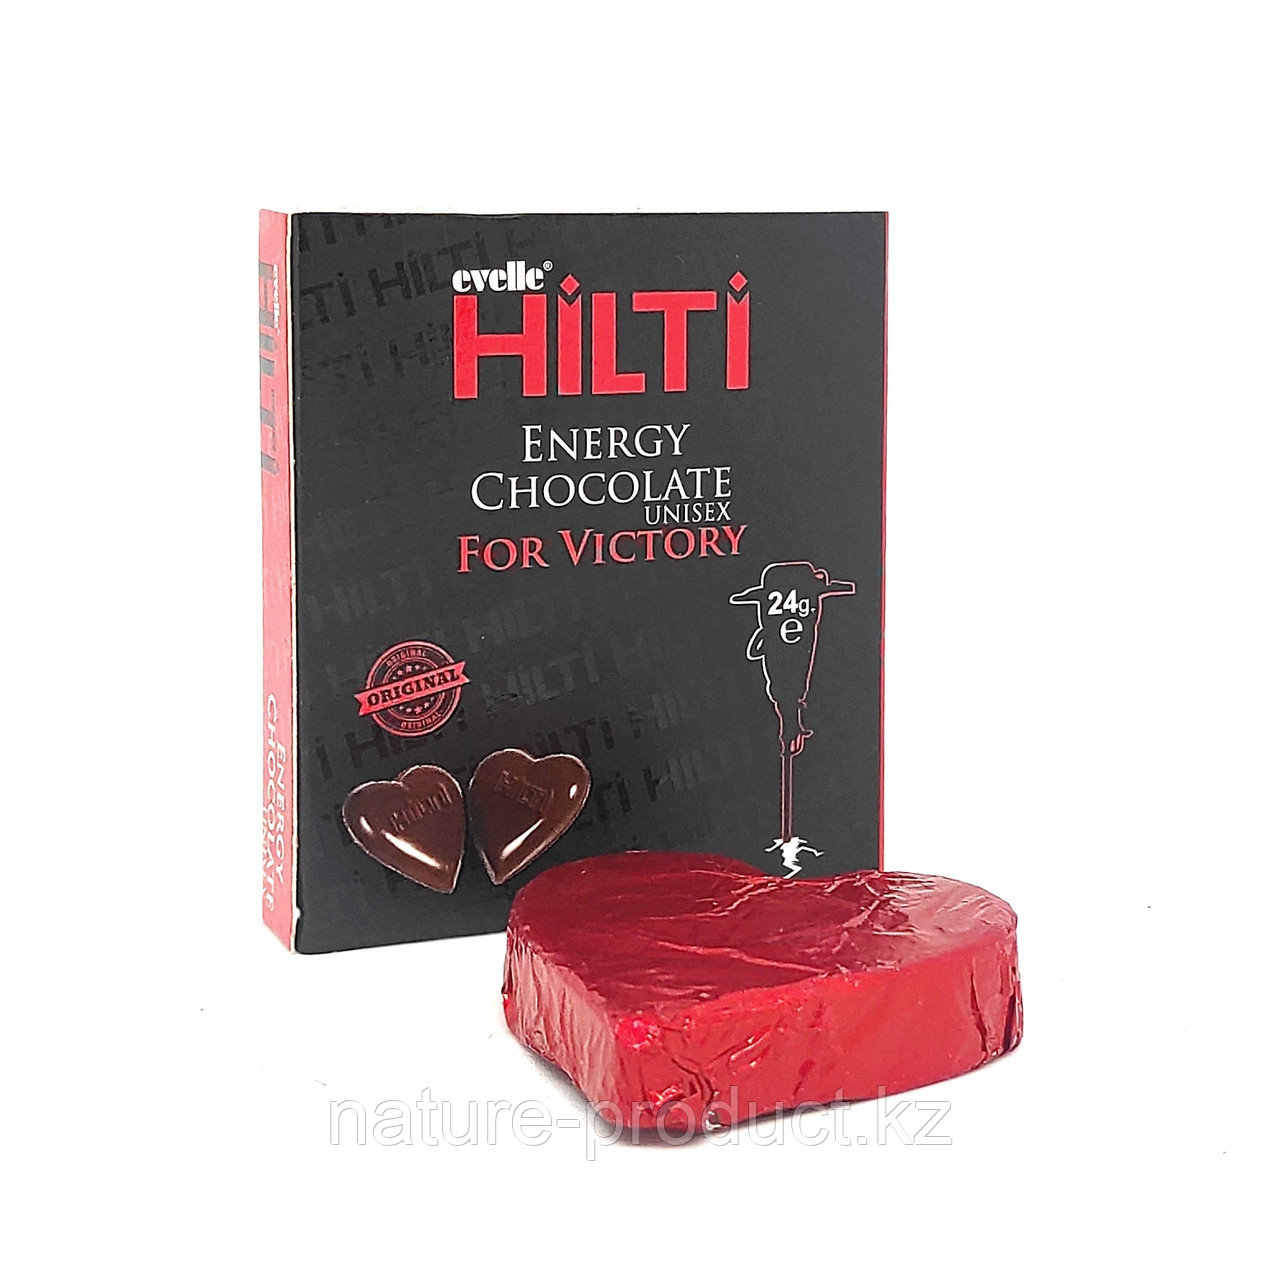 Шоколад Hilti Energy Chocolate unisex For Victory, как для мужчин и женщин, 1 шт